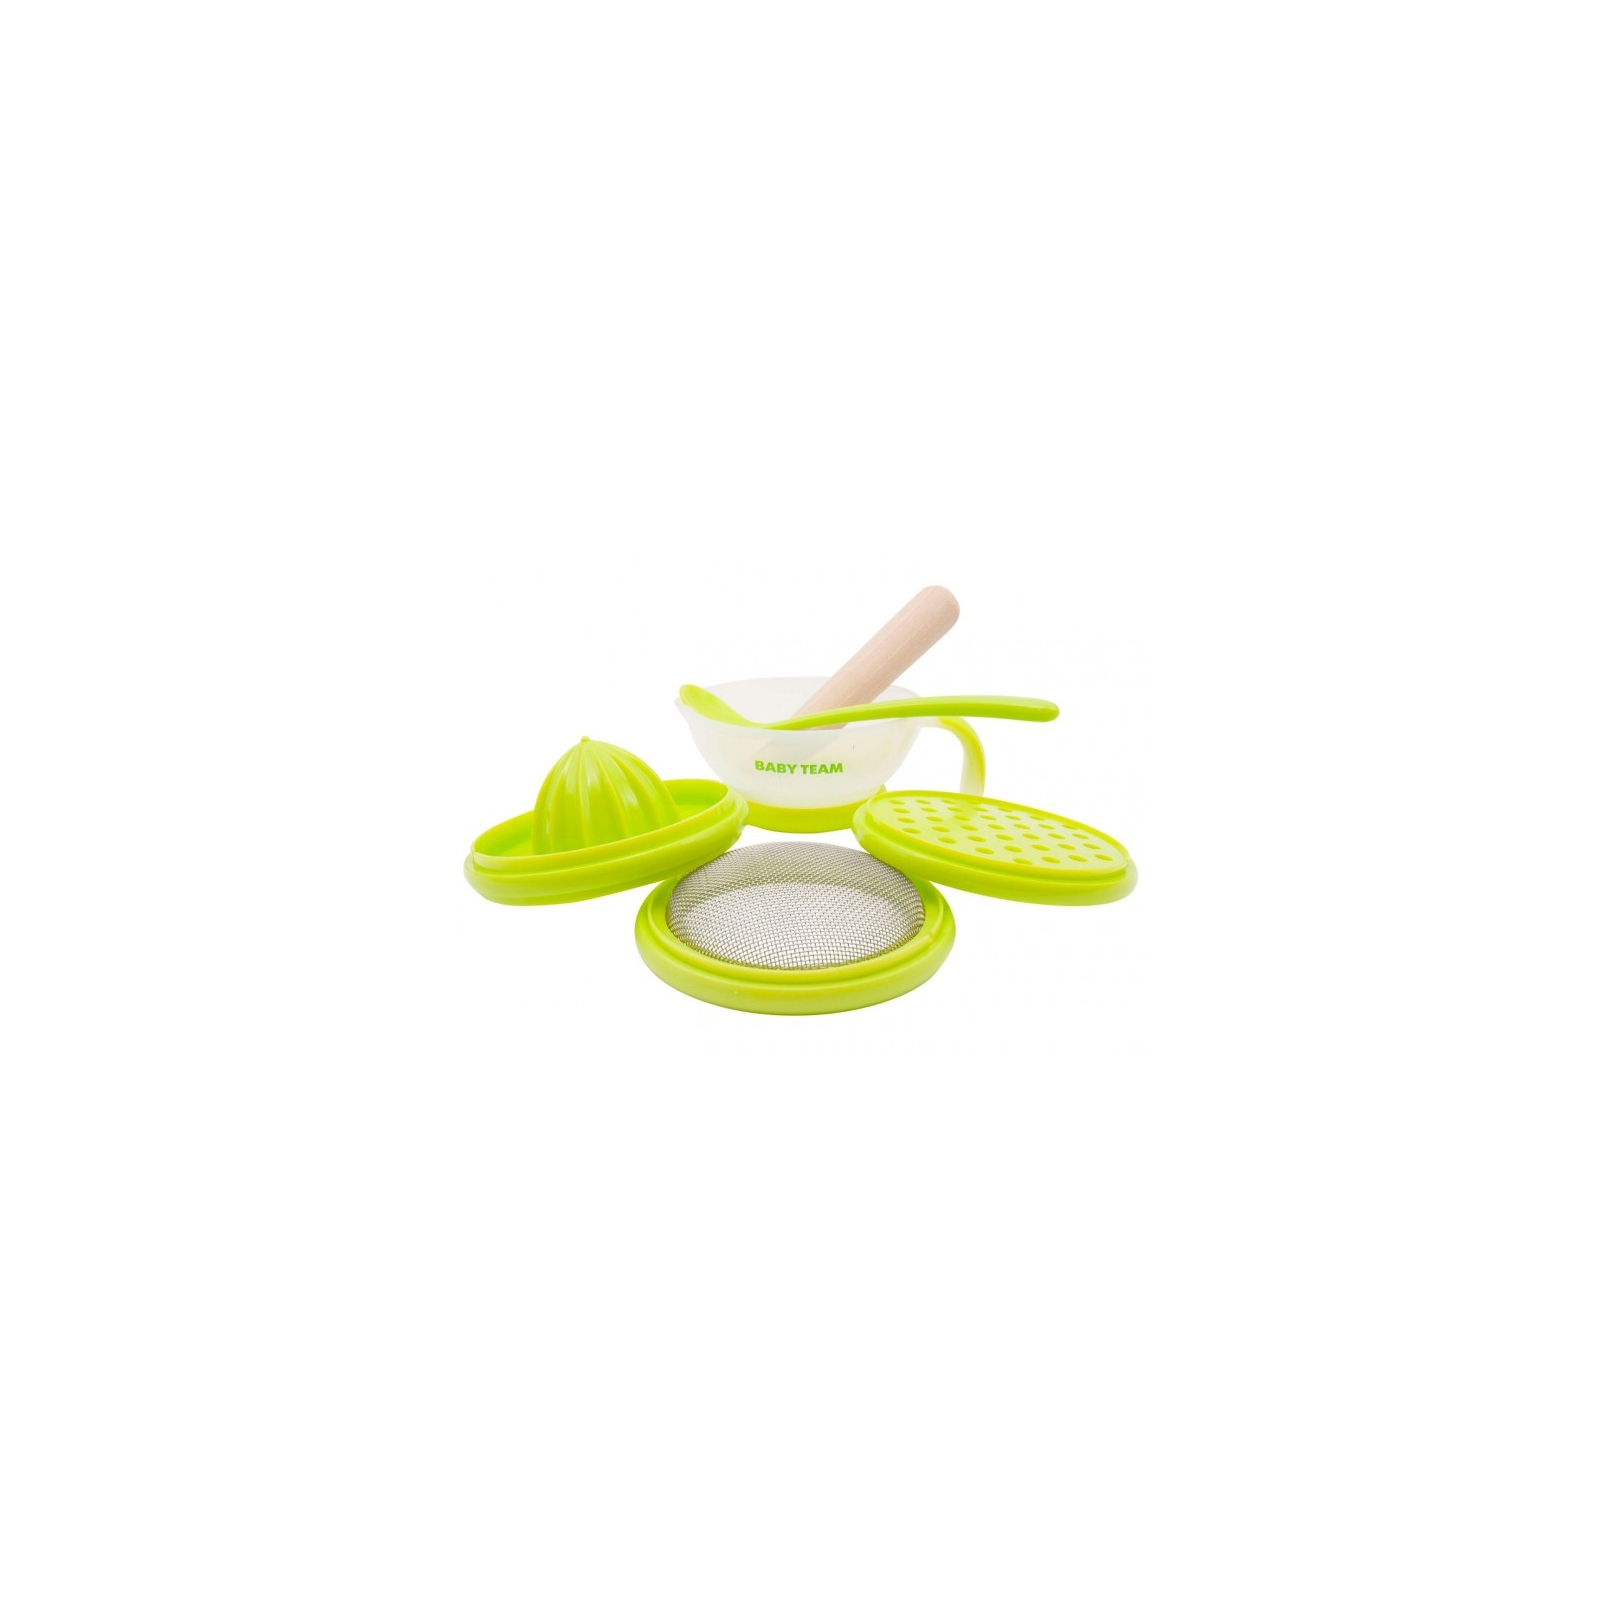 Набор детской посуды Baby Team терка, сито, соковыжималка, чаша, ложка (6095)